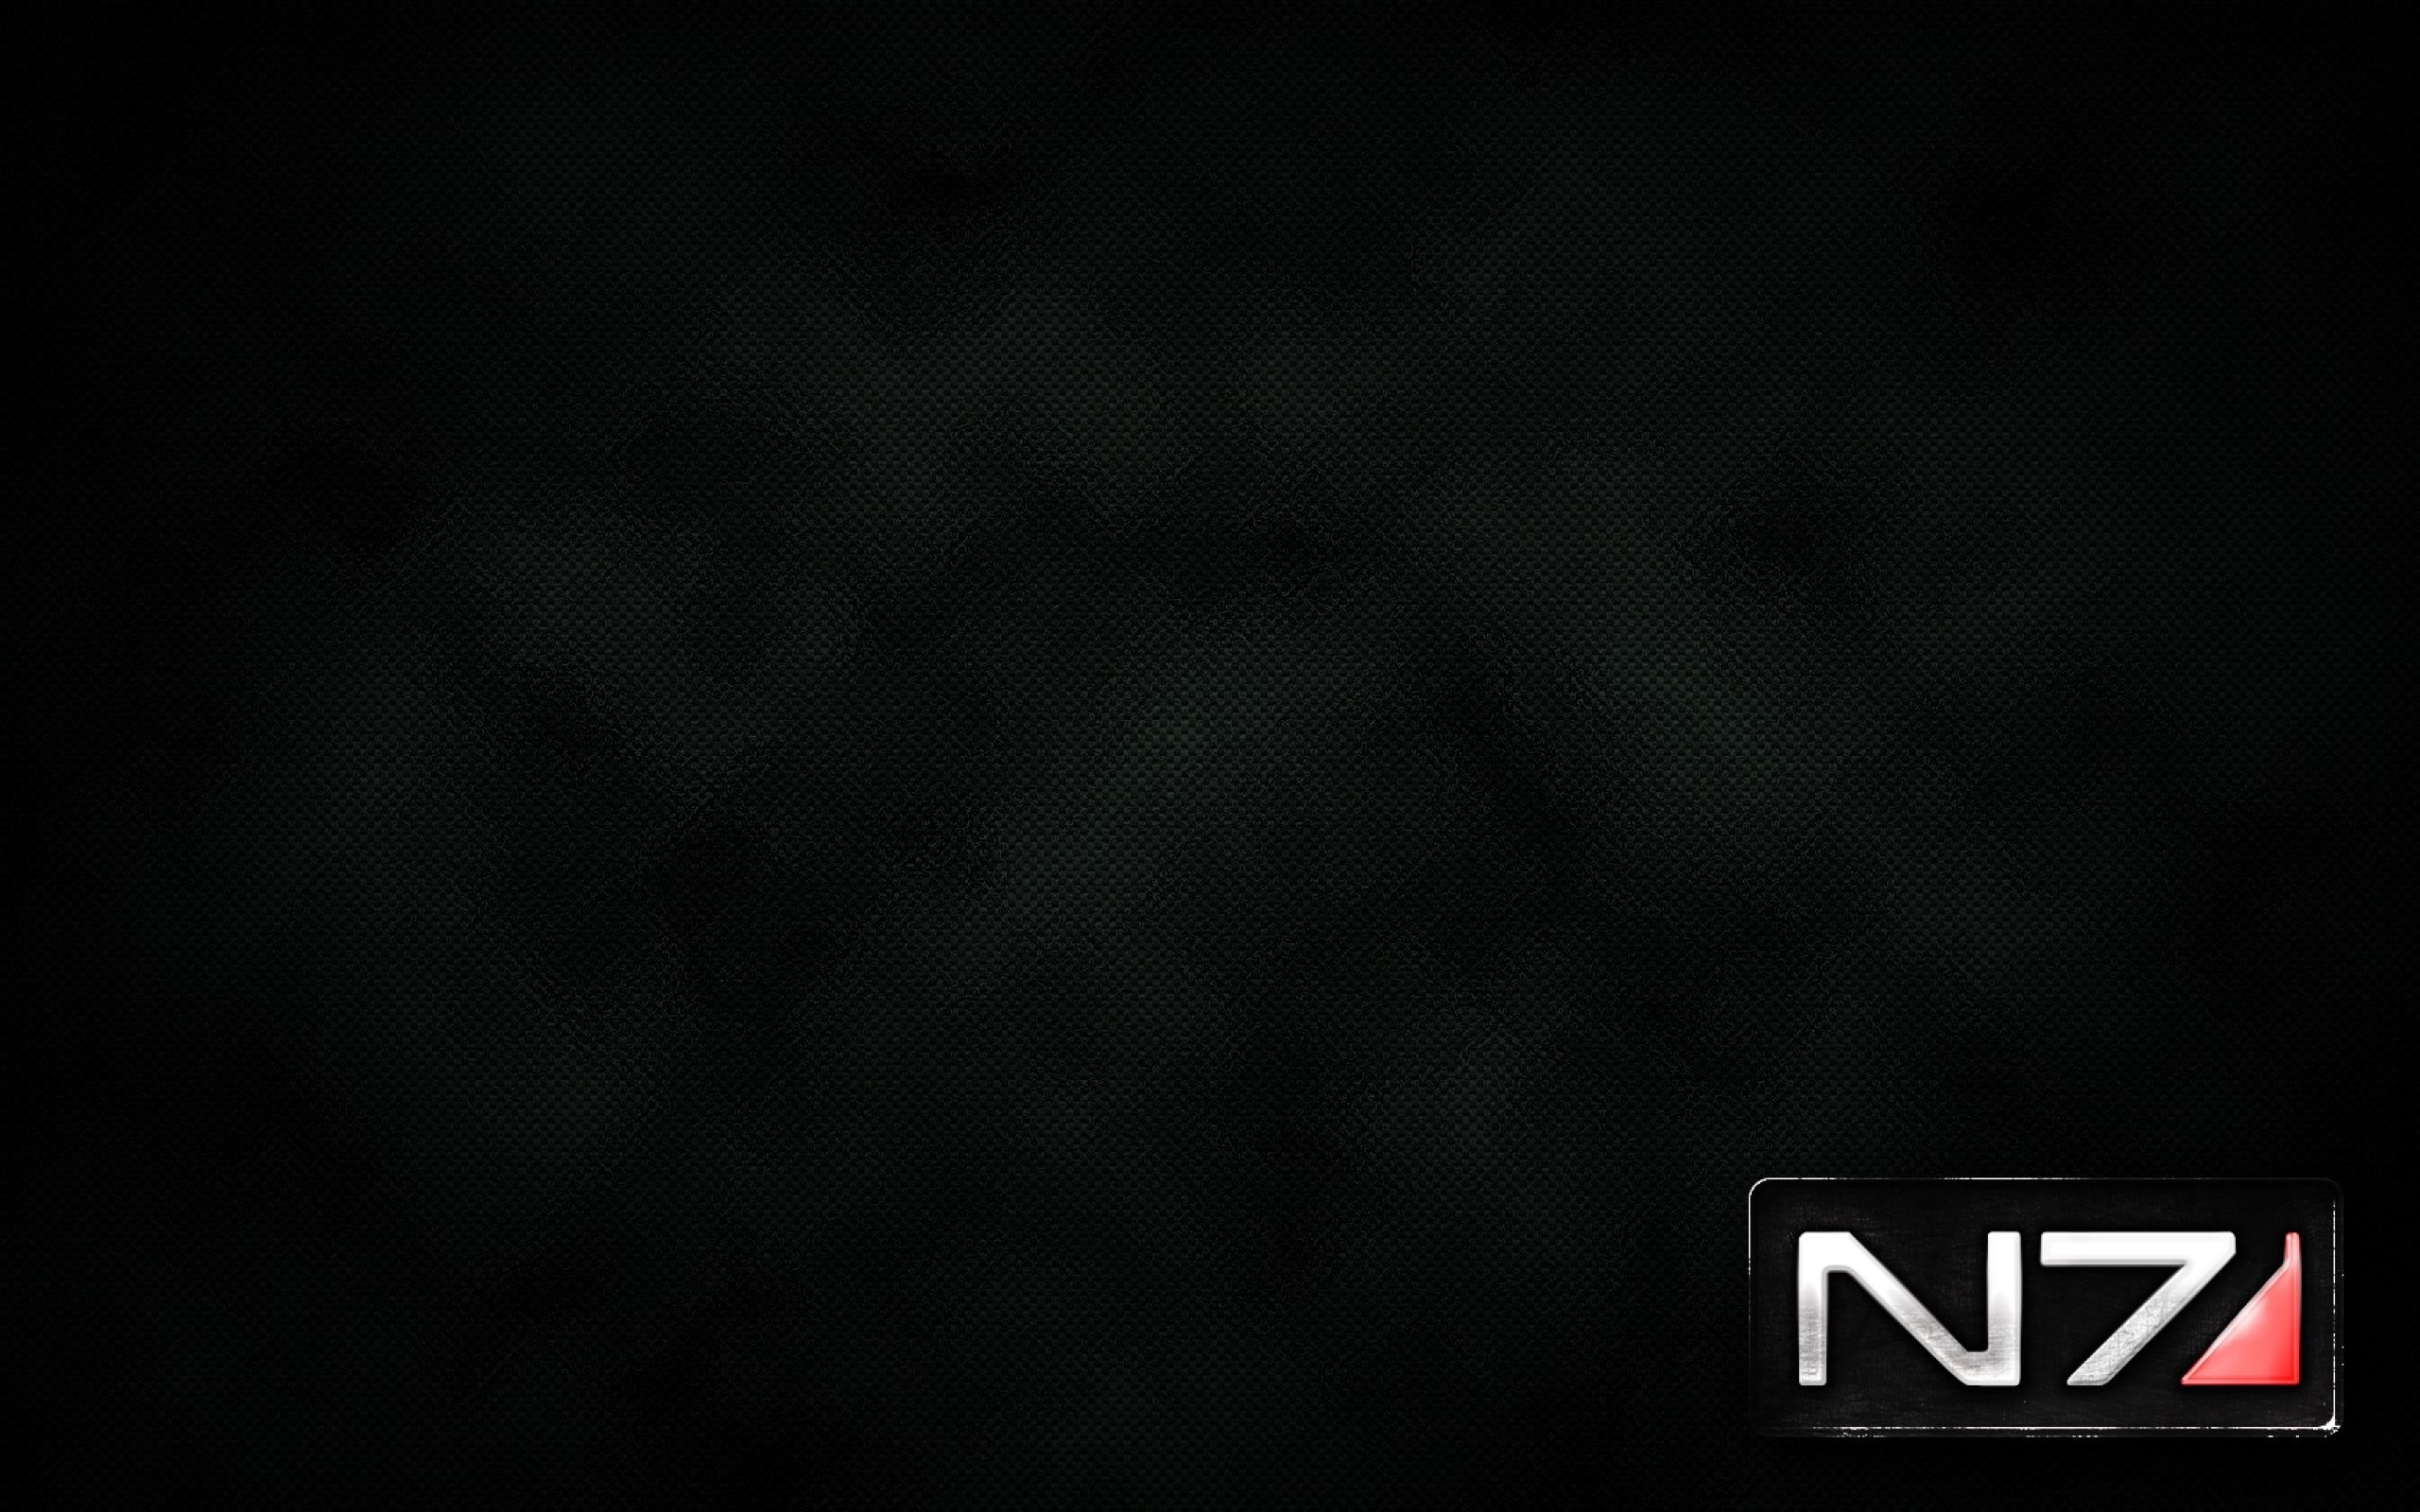 N7 Logos Wallpaper